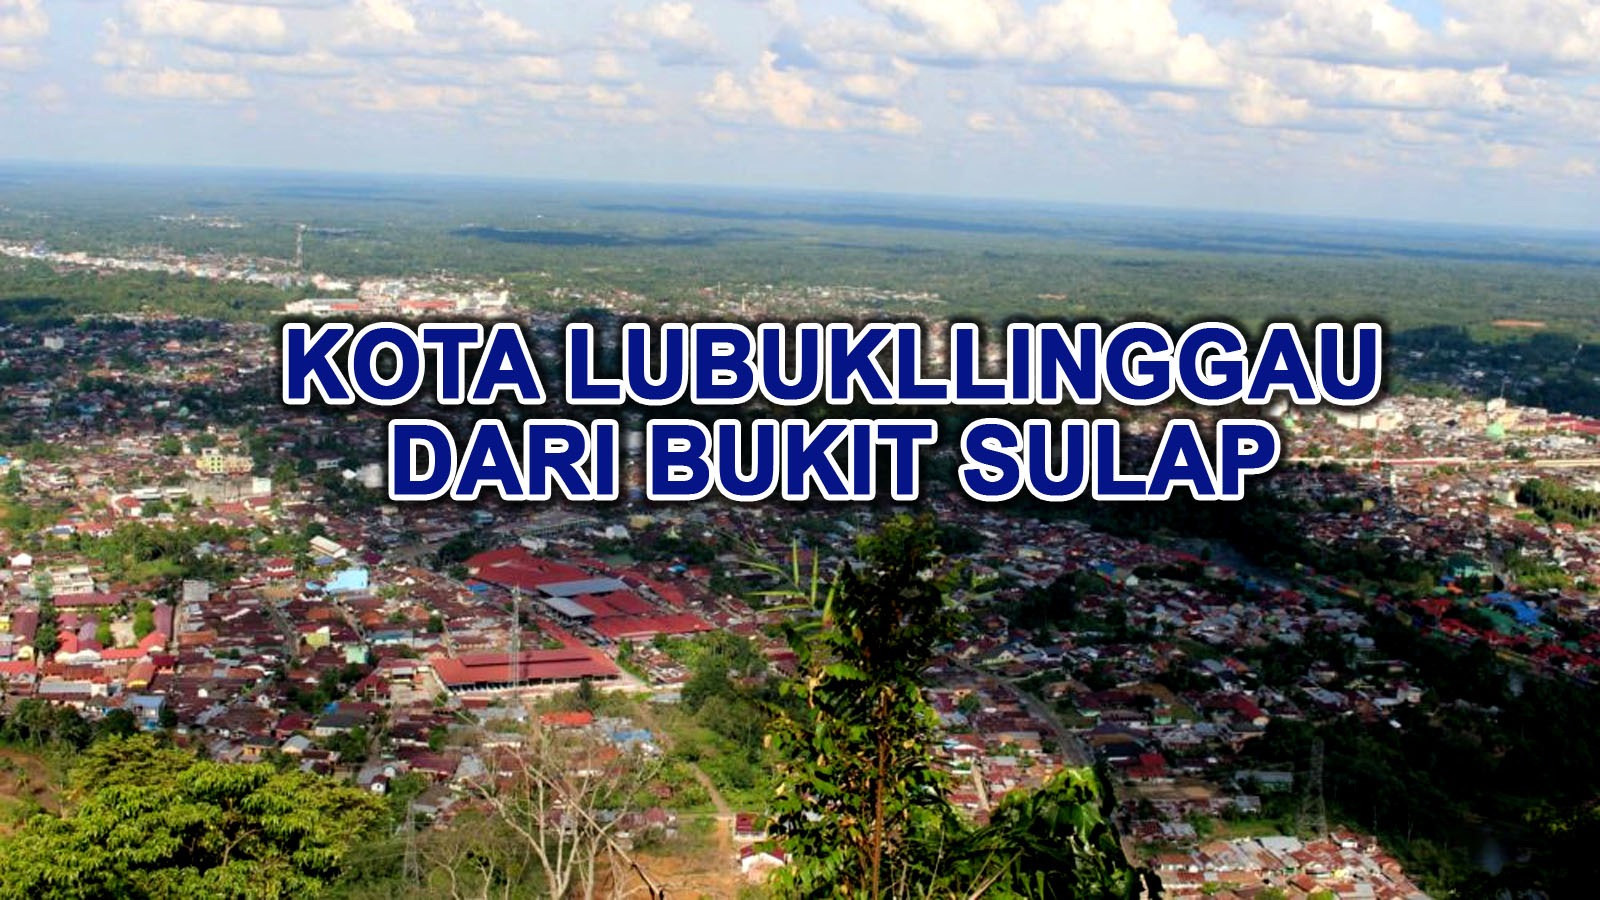 Mau Saksikan Pemandangan Kota Lubuklinggau dari Bukit Sulap, Cukup Bayar Rp25 Ribu